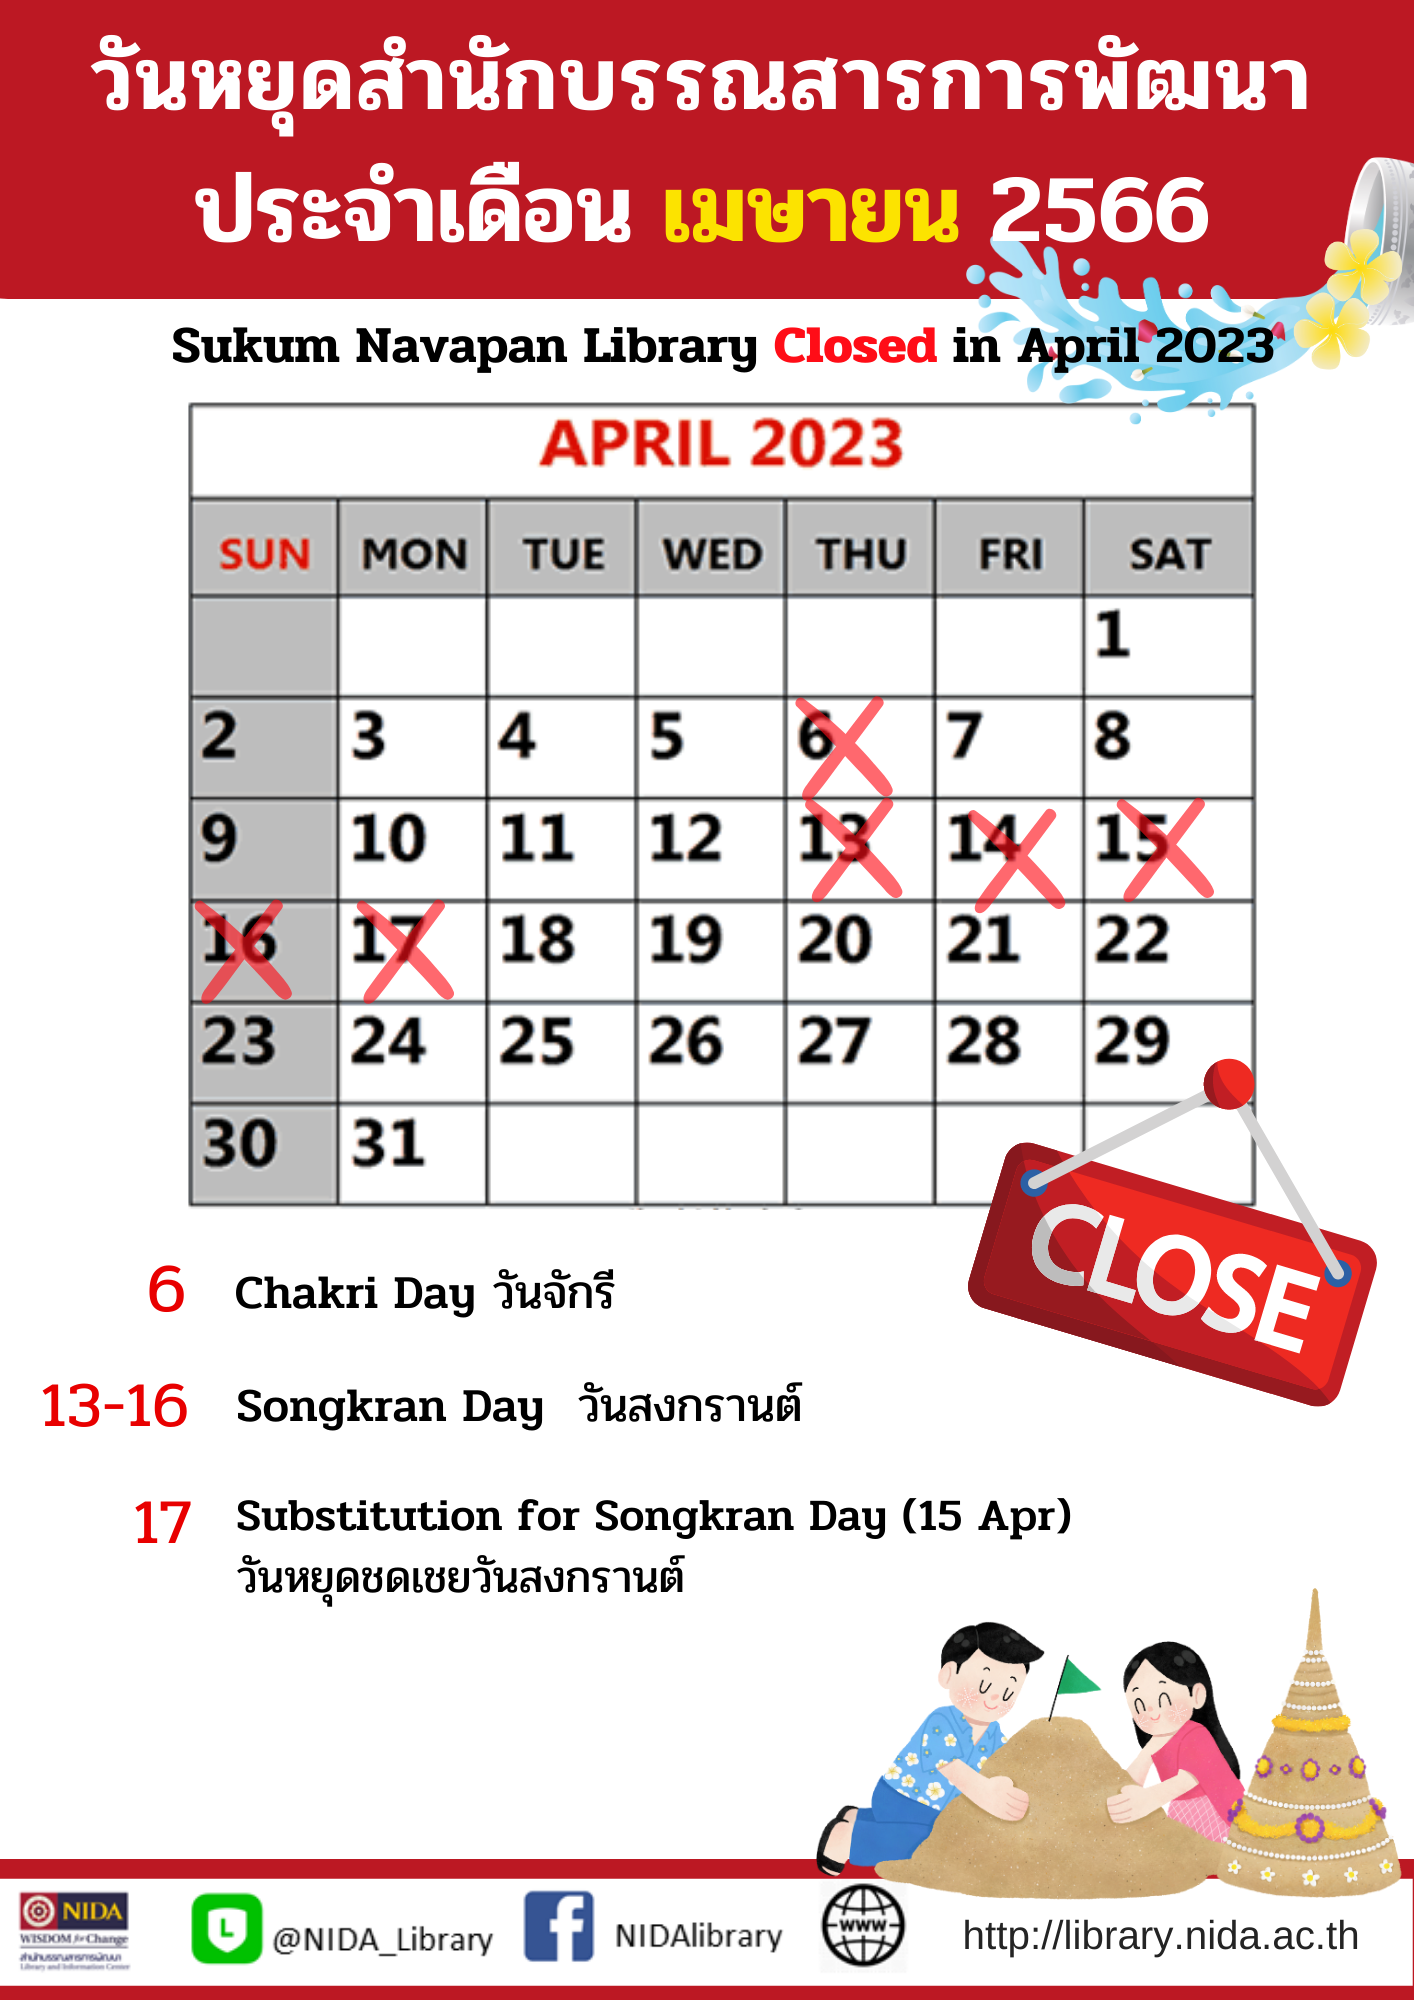 Sukum Navapan Library Closed in April 2023